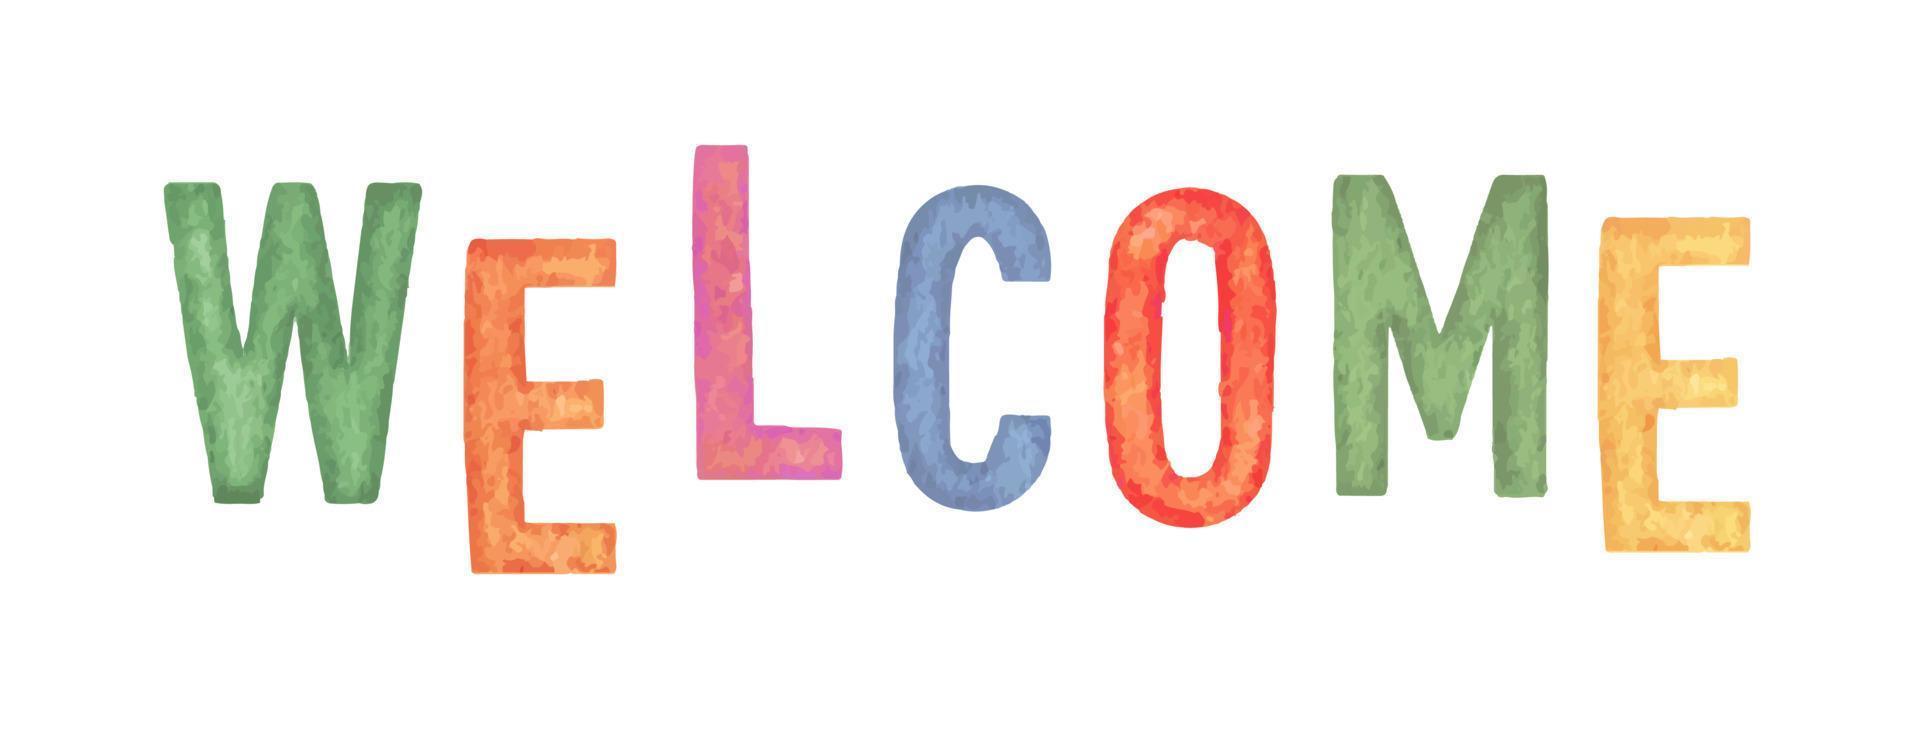 Bienvenido. de colores acuarela letras inscripción. vector